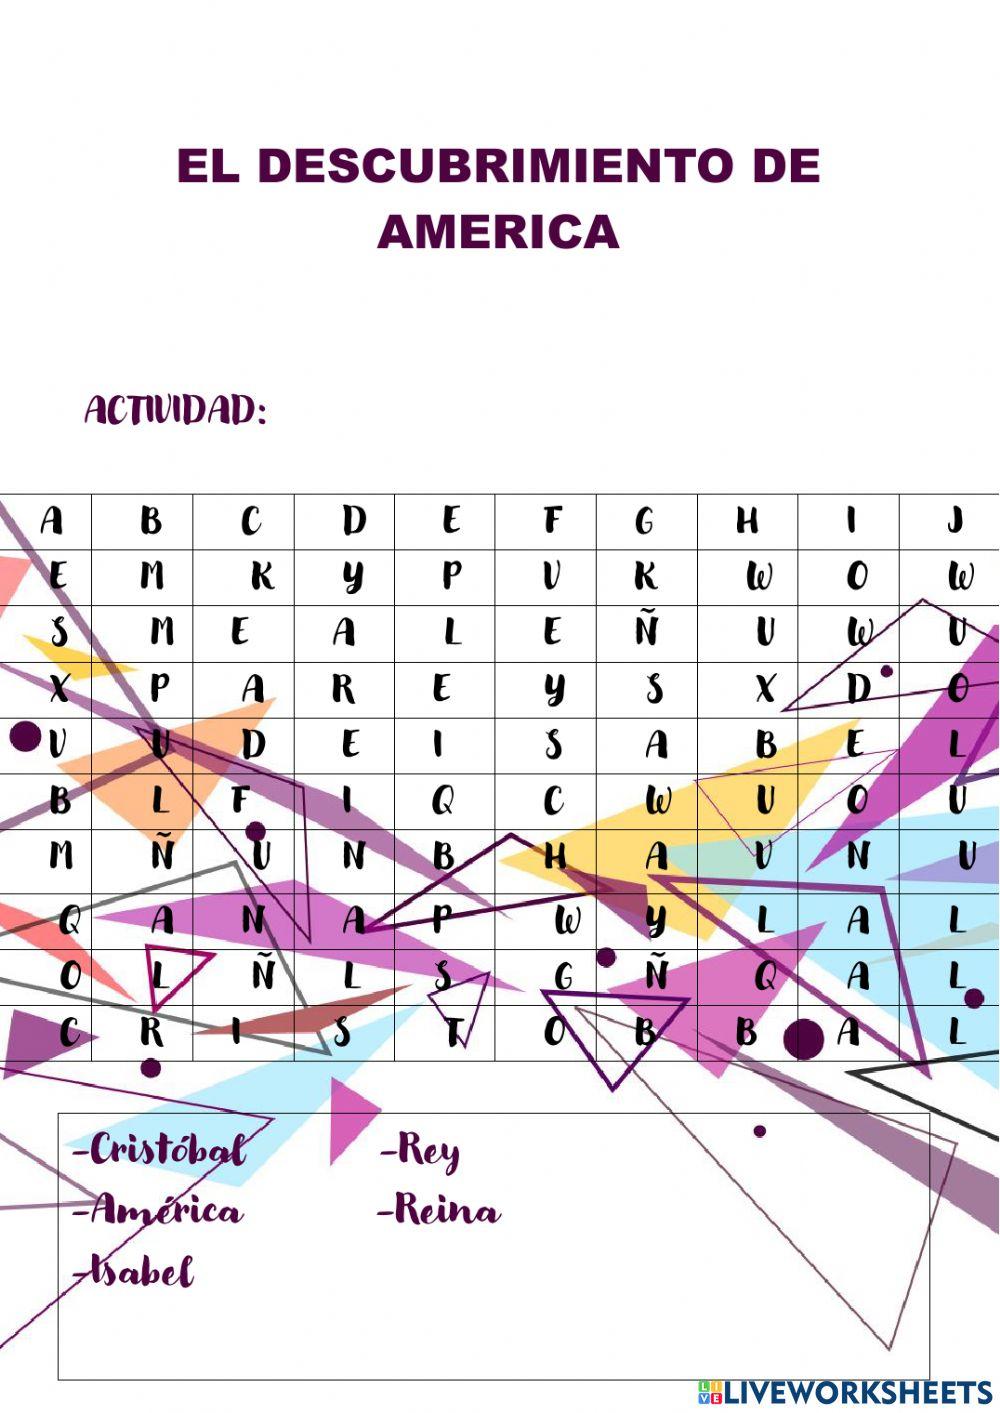 El descubrimiento de América